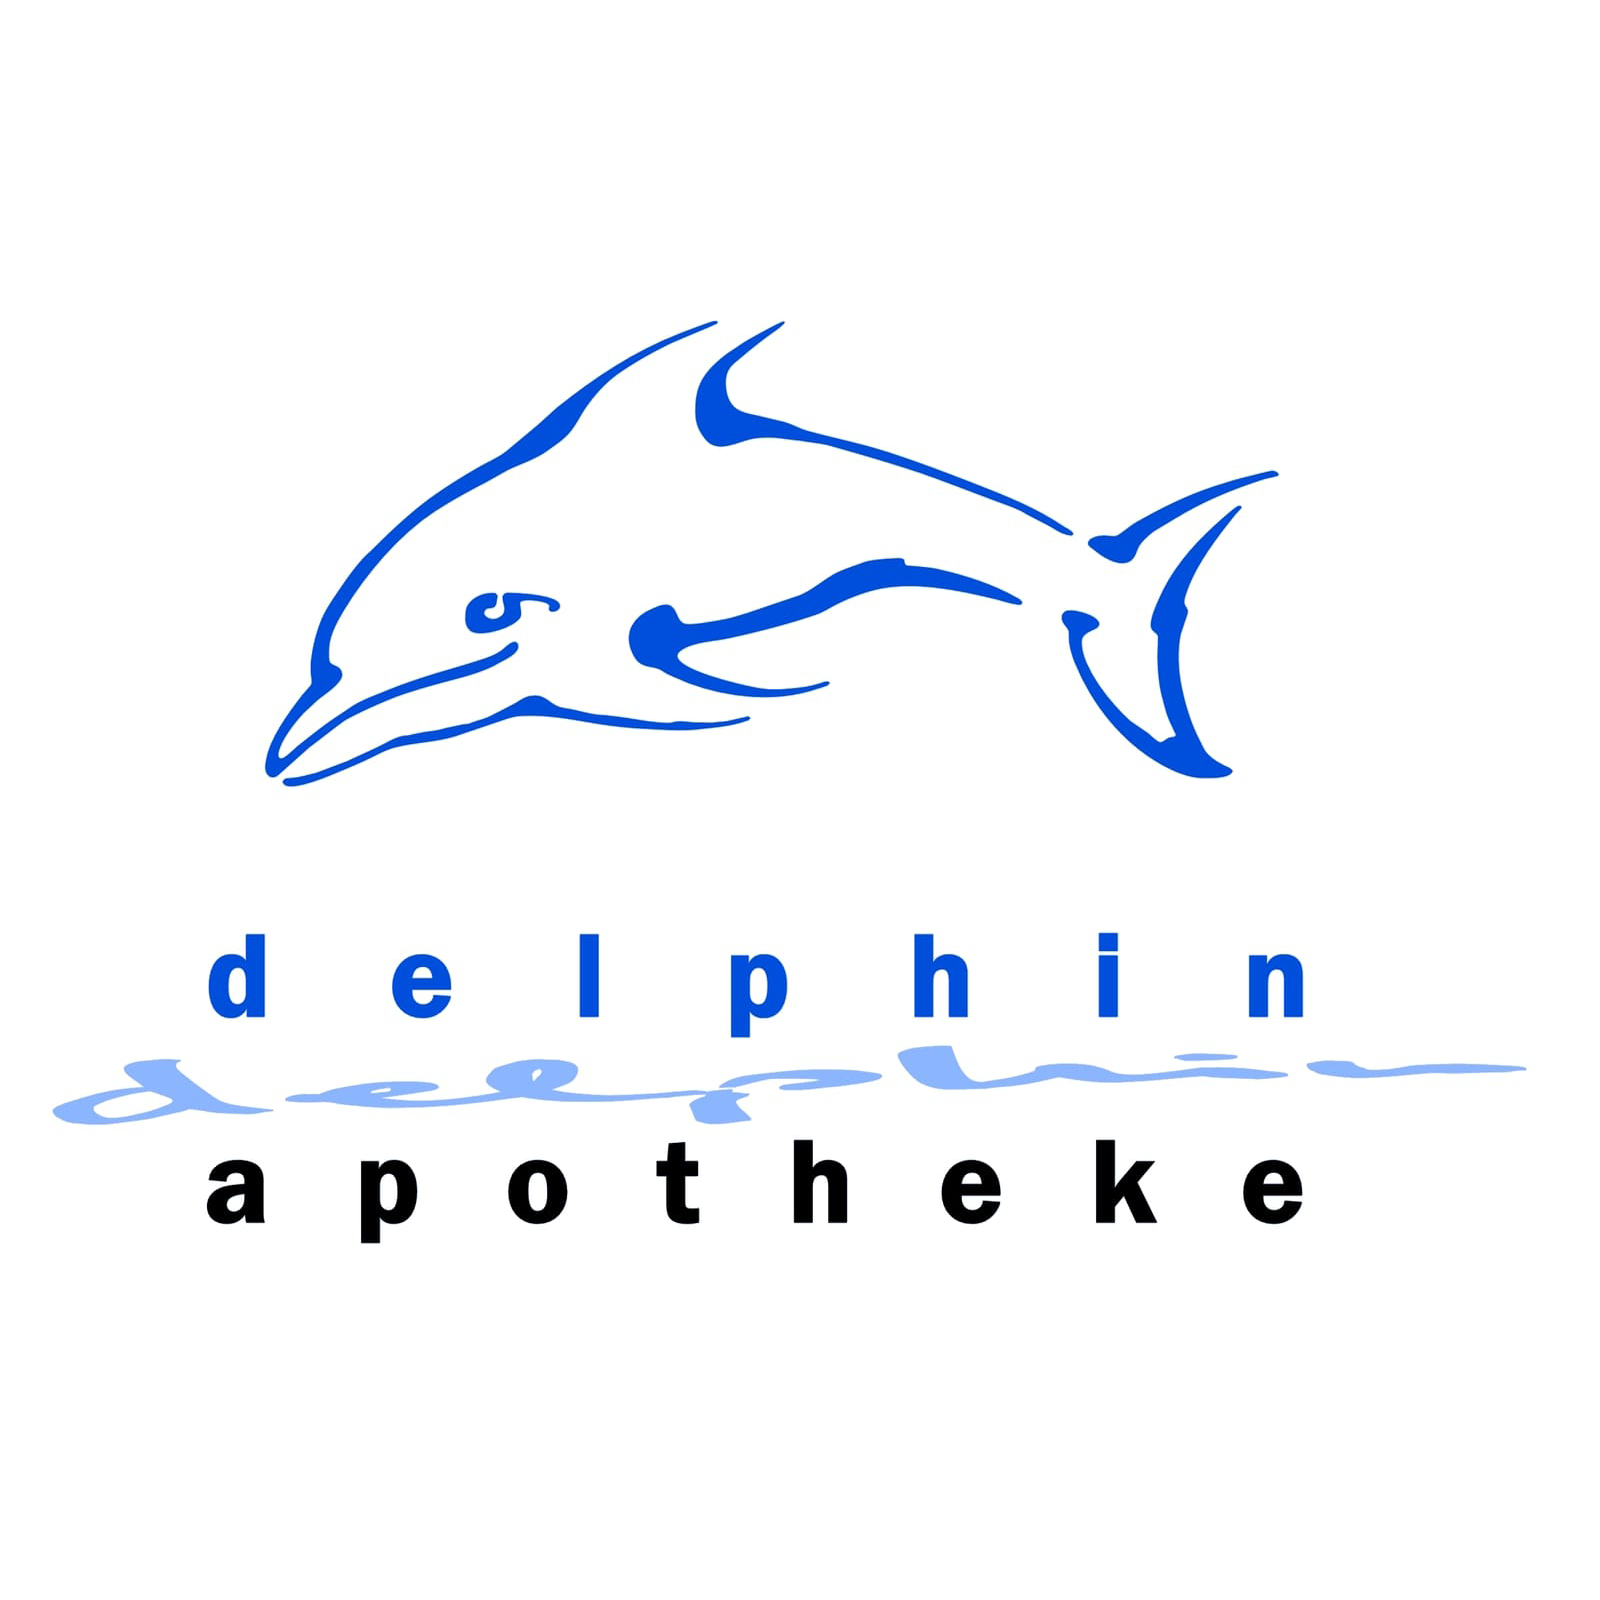 Delphin-Apotheke Logo